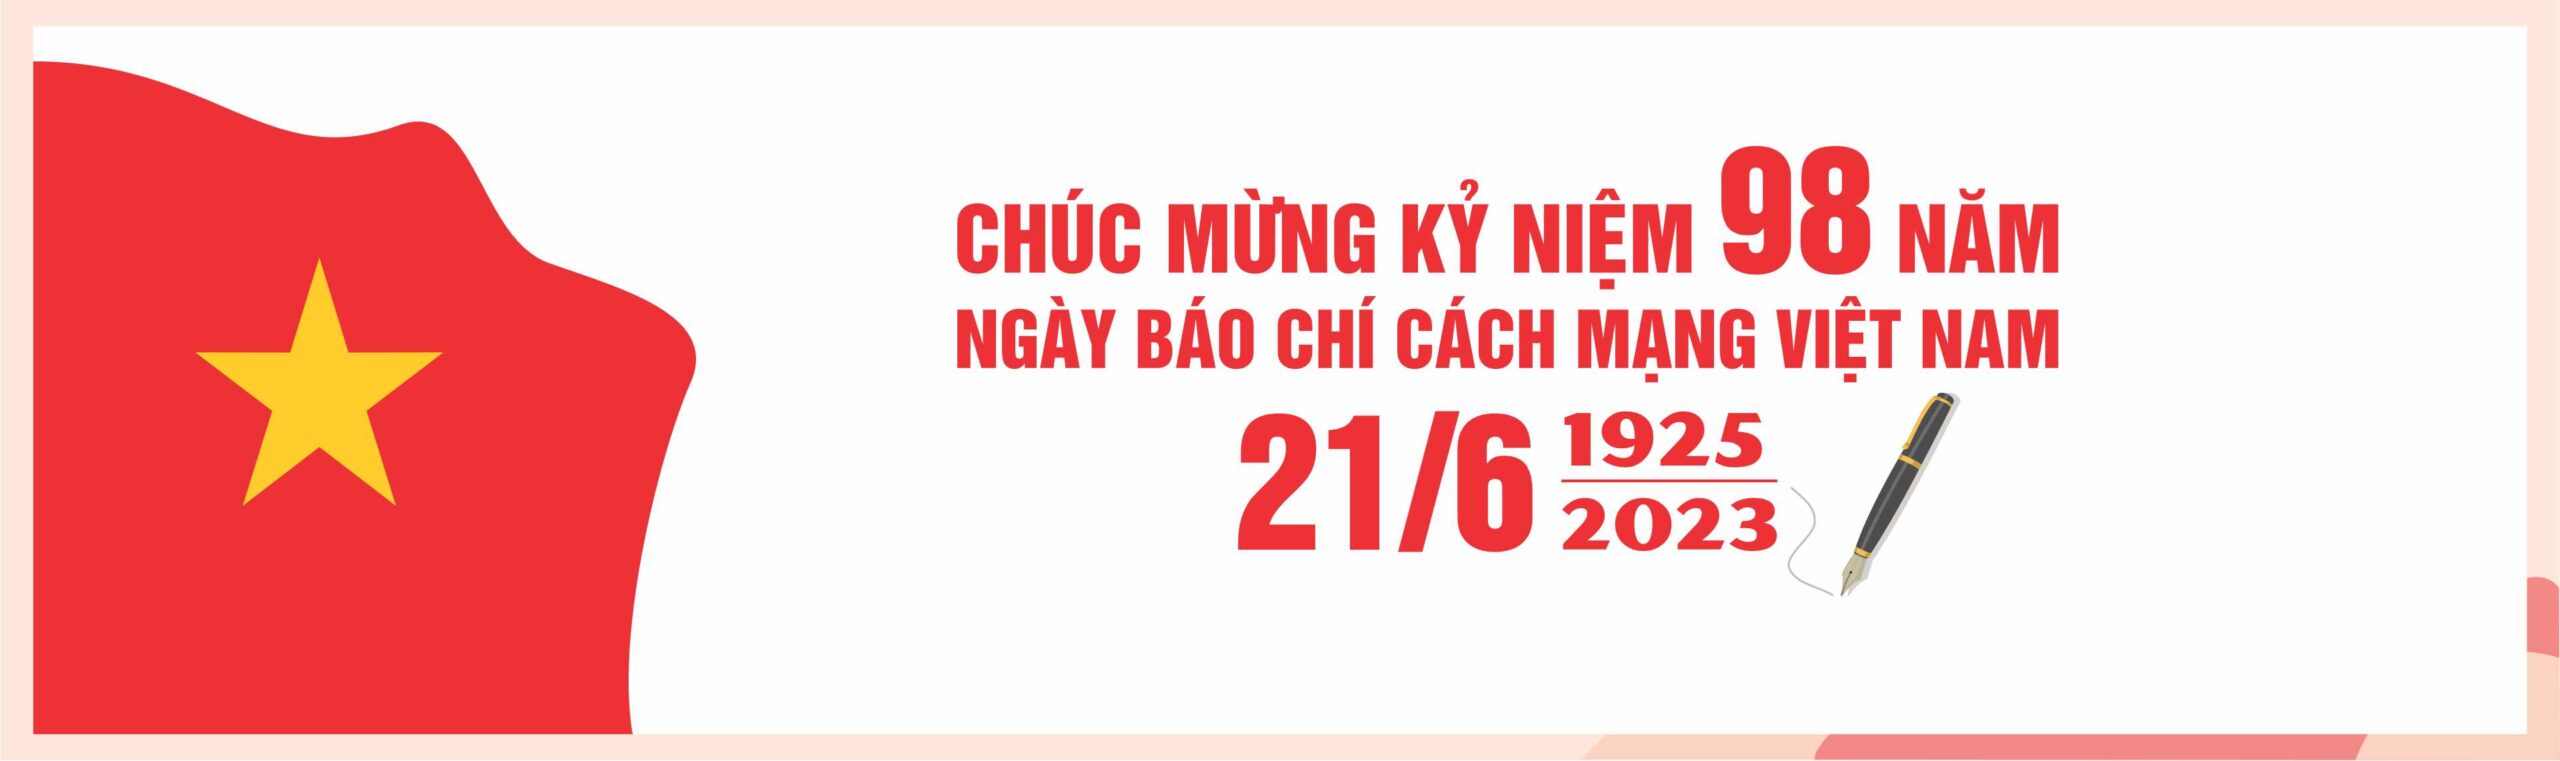 Bangron-Ngay-Bao-chi-CMVN-21t6-2023-ok